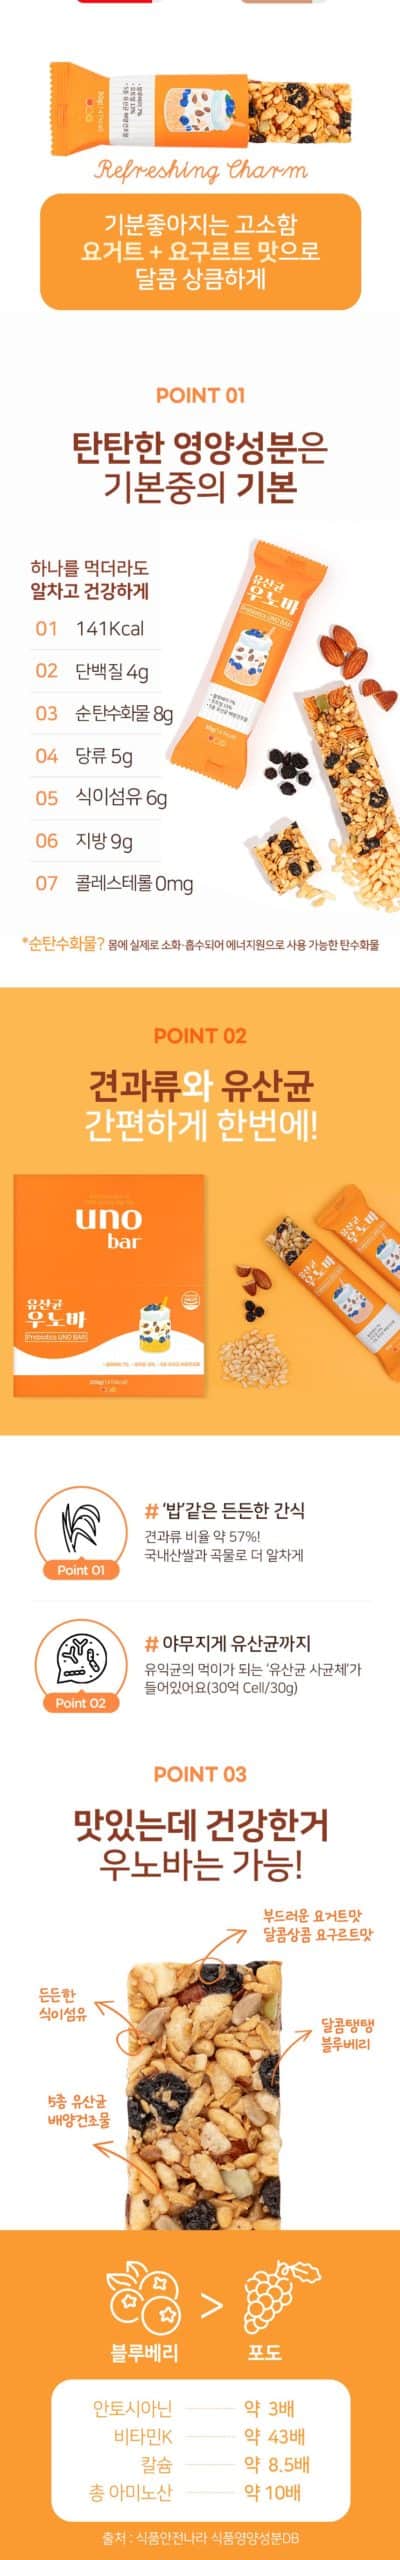 韓國食品-[유산균 우노바] 요구르트맛 에너지바 30g